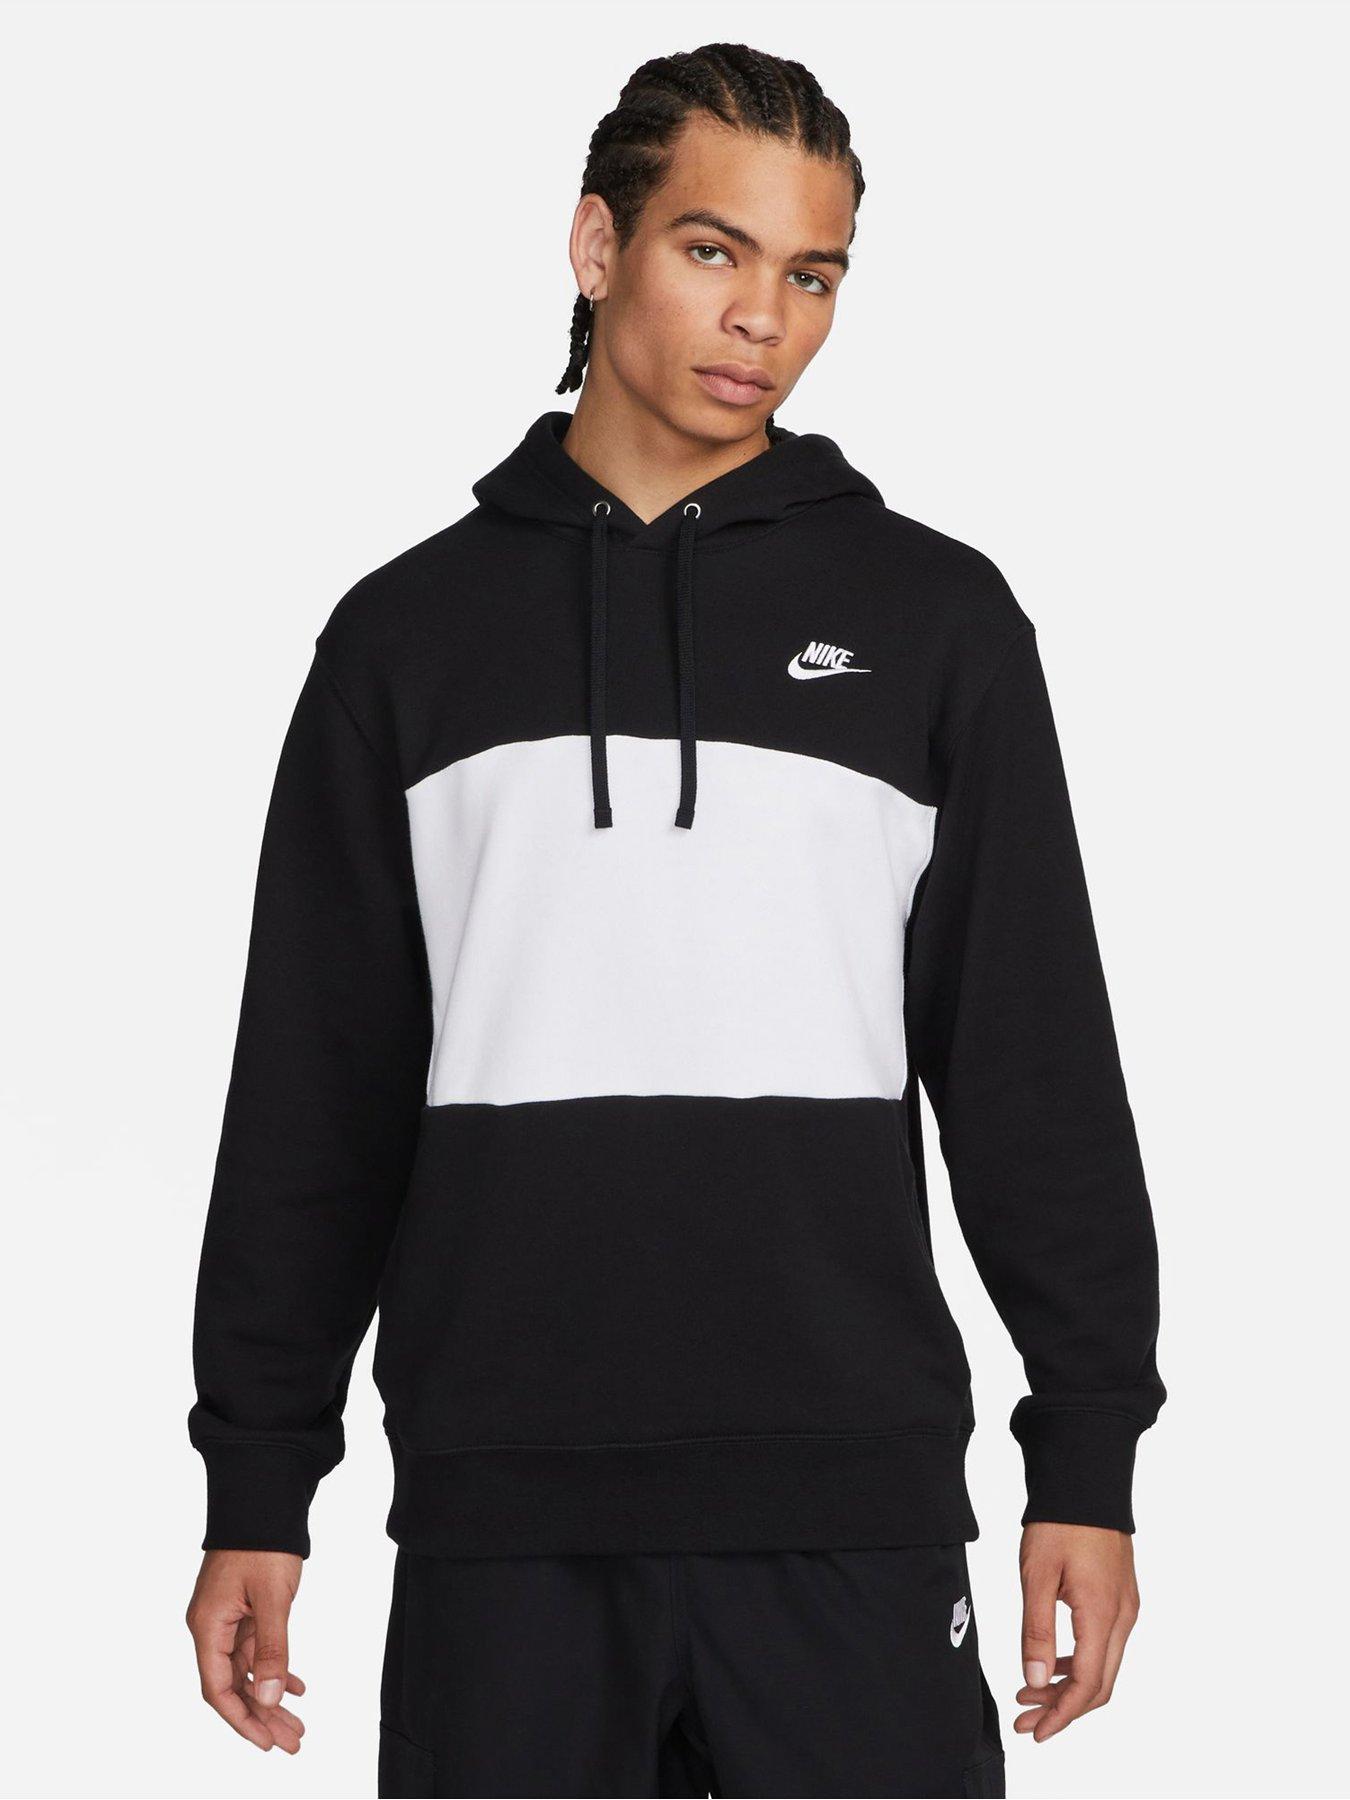 Best golf hoodies 2023: Nike men's hoodie, Adidas men's hoodie, more